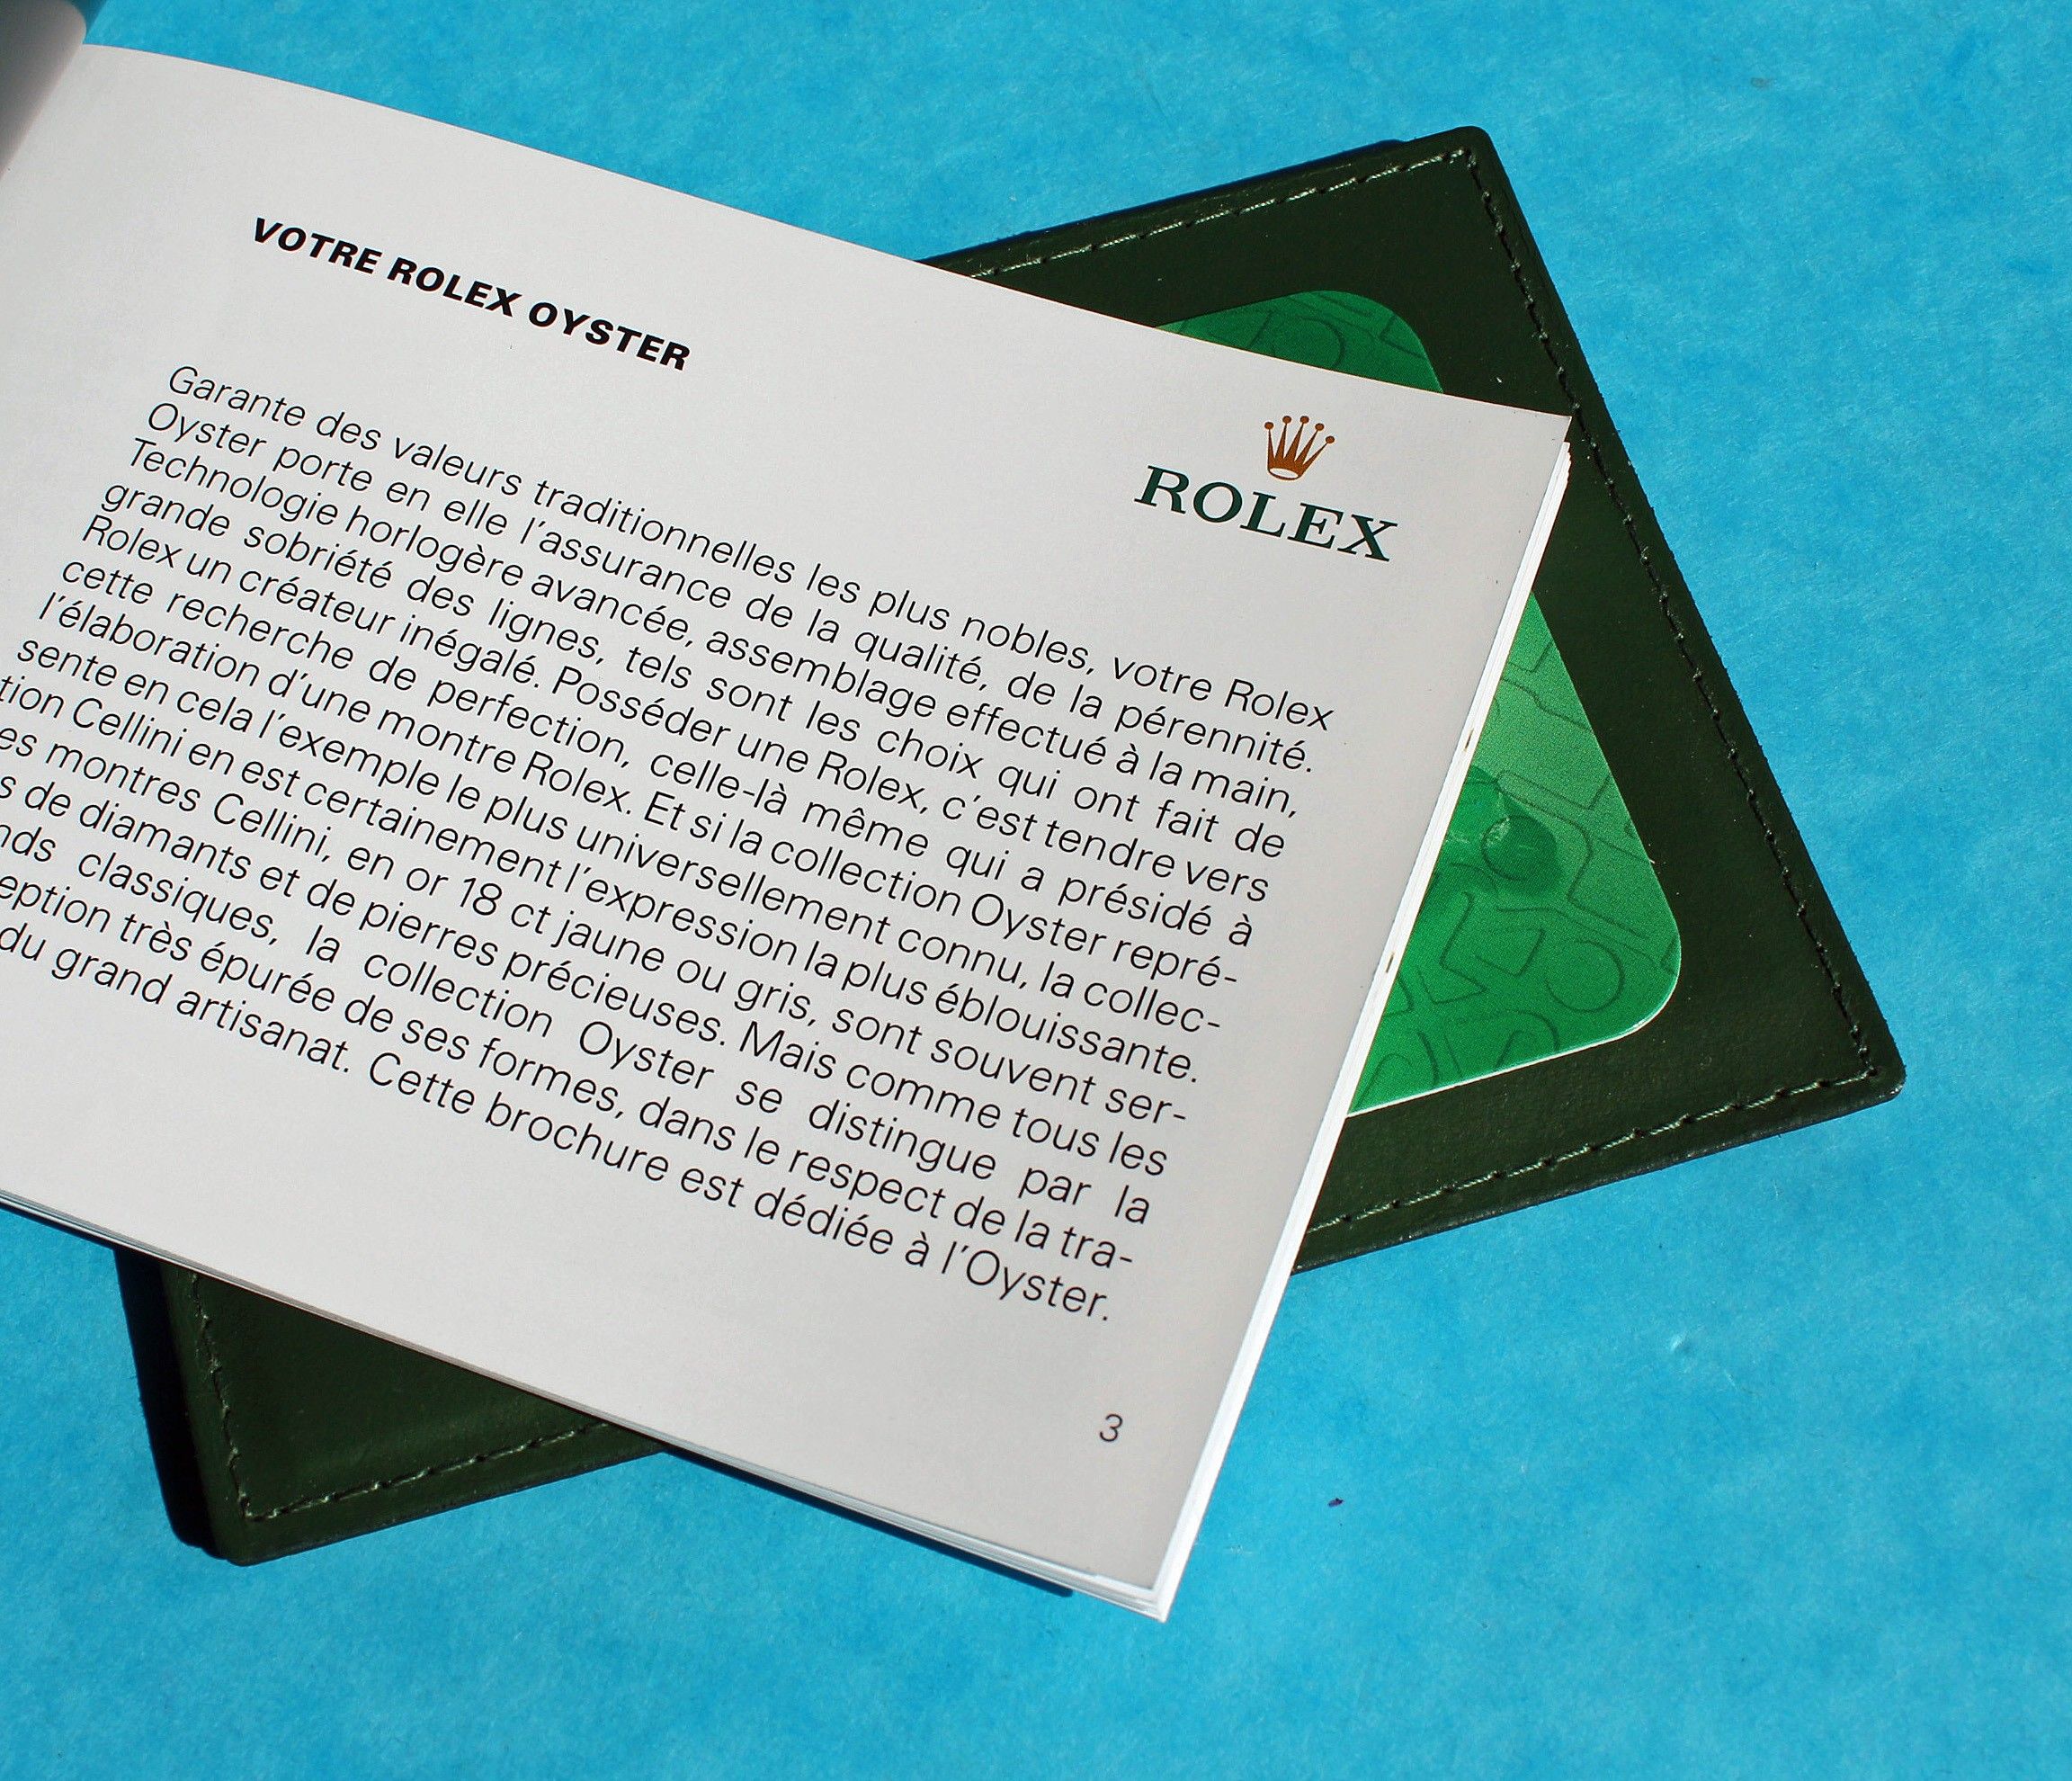 rolex business card